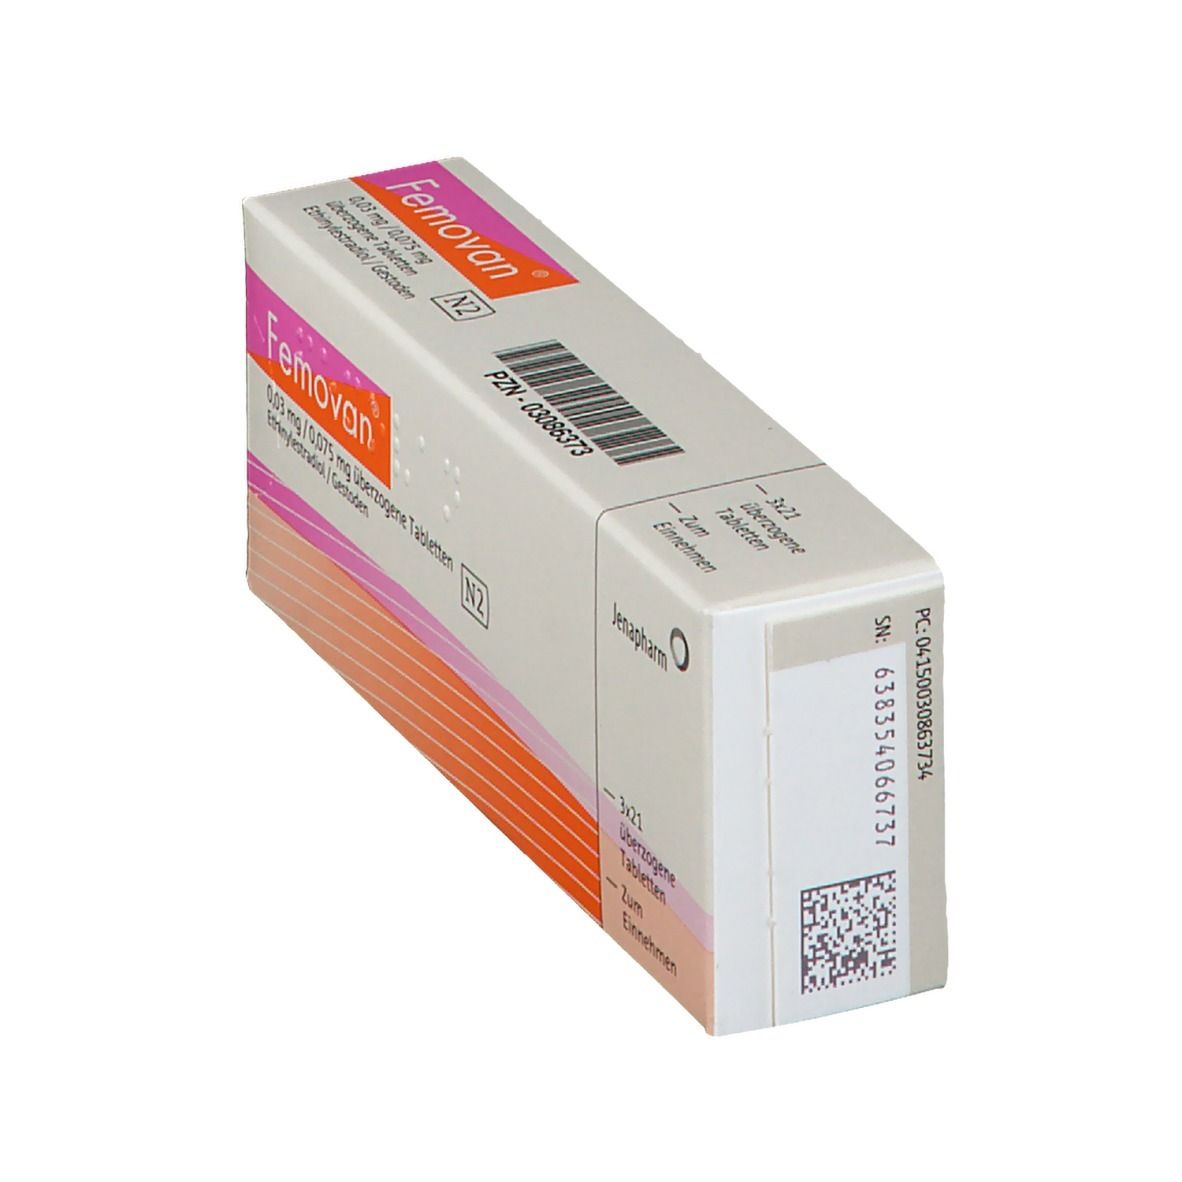 Femovan® 0,03 mg/0,075 mg